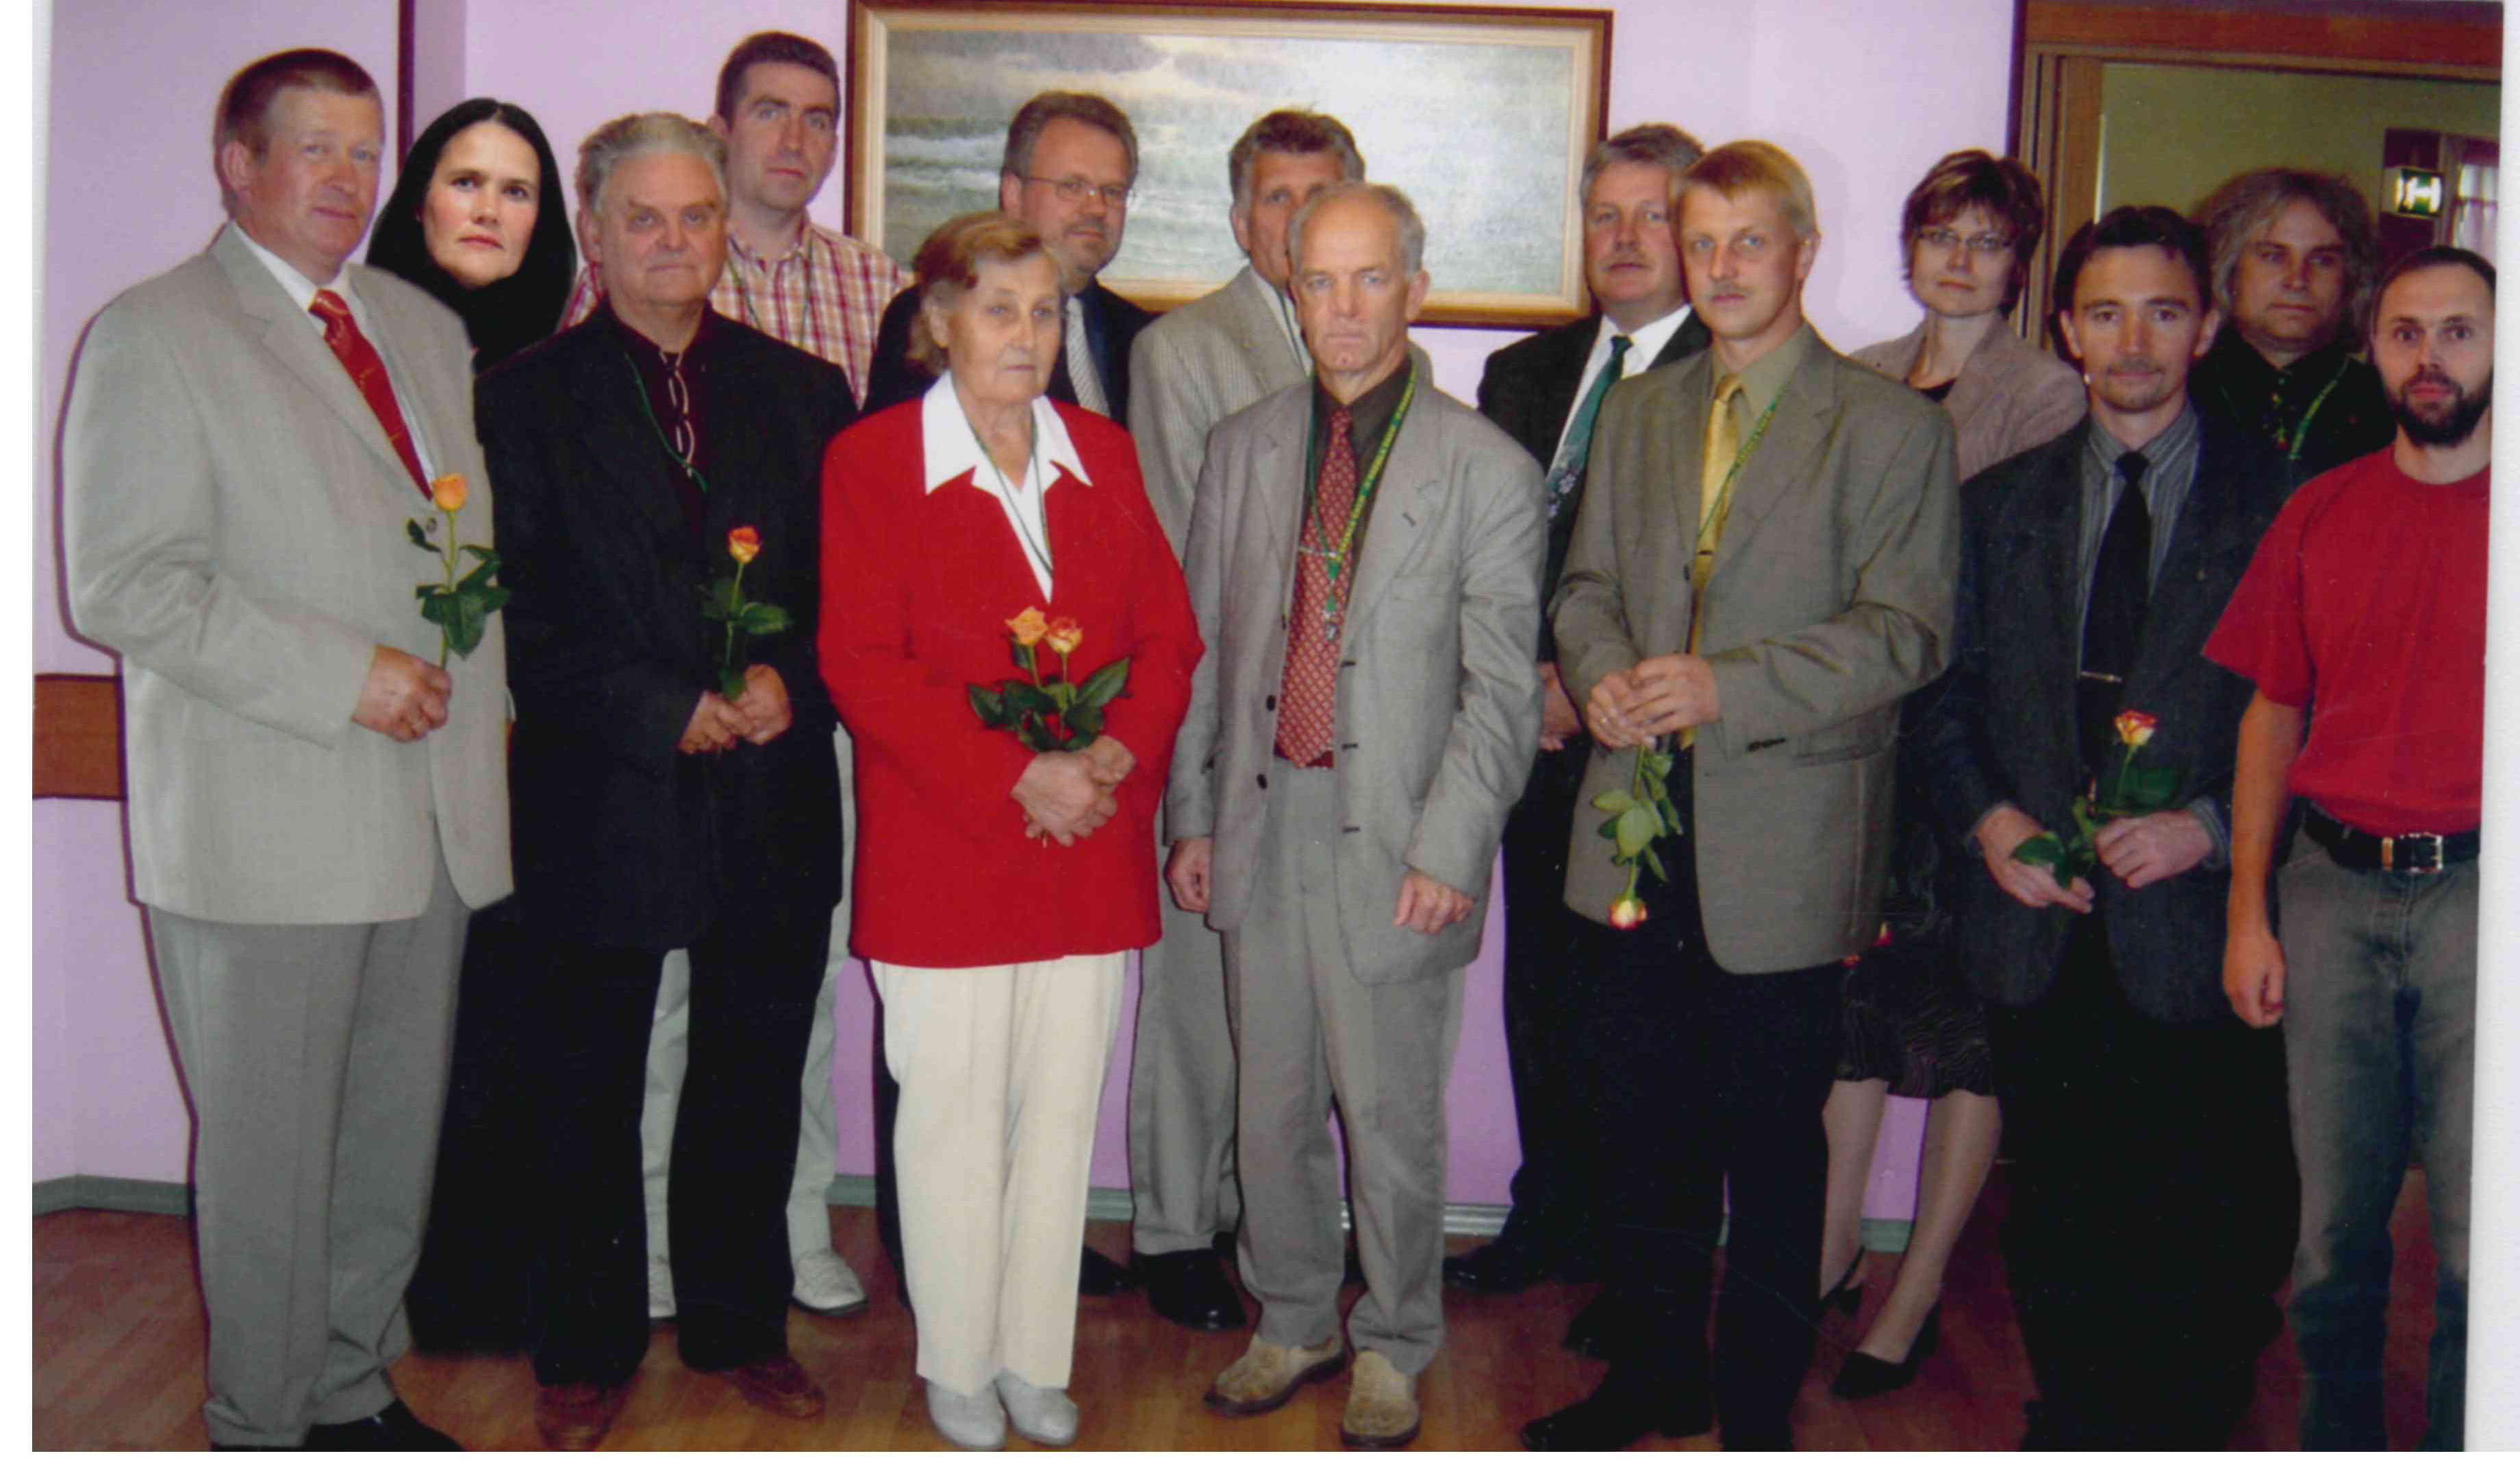 Employees of the municipality 2001